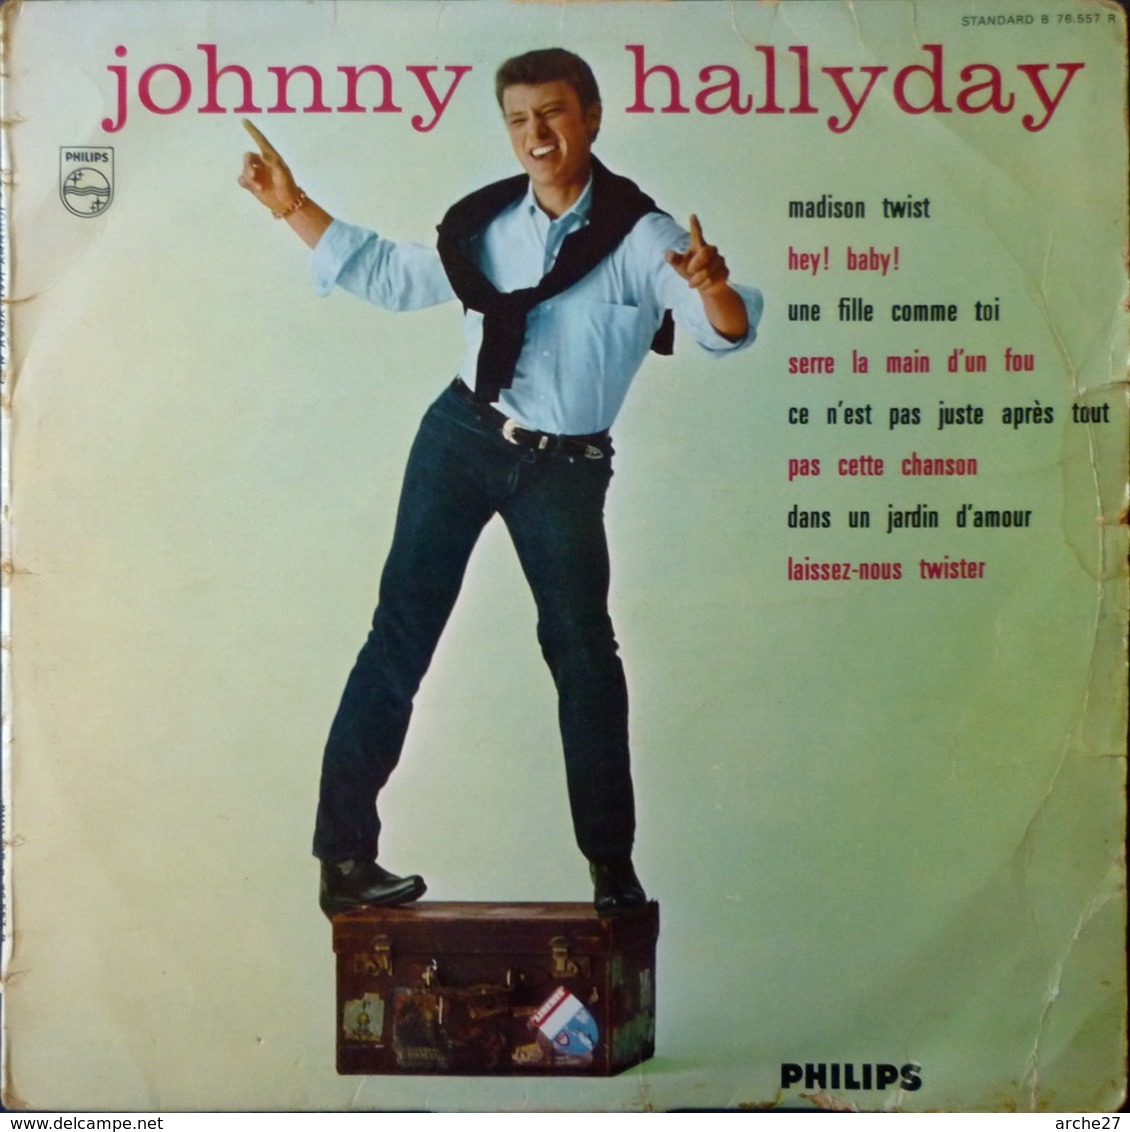 JOHNNY HALLYDAY - 25 Cm - 33T - Disque Vinyle - Madison Twist - 76557 - Rock